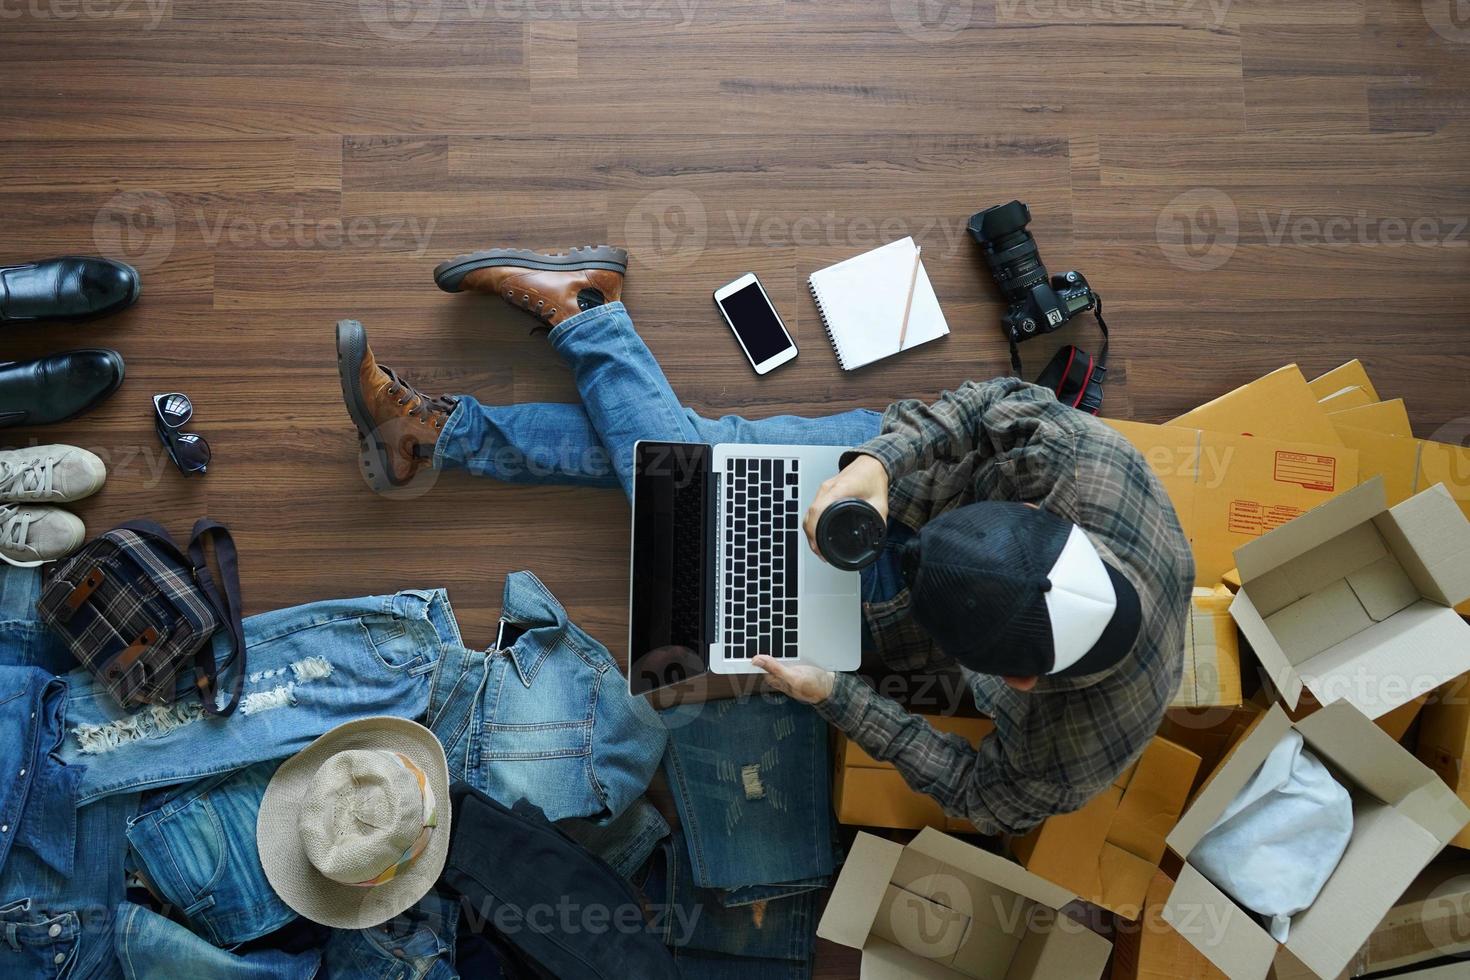 vue de dessus d'un homme tenant une tasse de café travaillant un ordinateur portable avec des accessoires de mode sur un plancher en bois de la maison. avec colis postal, vente de conception d'idées en ligne photo